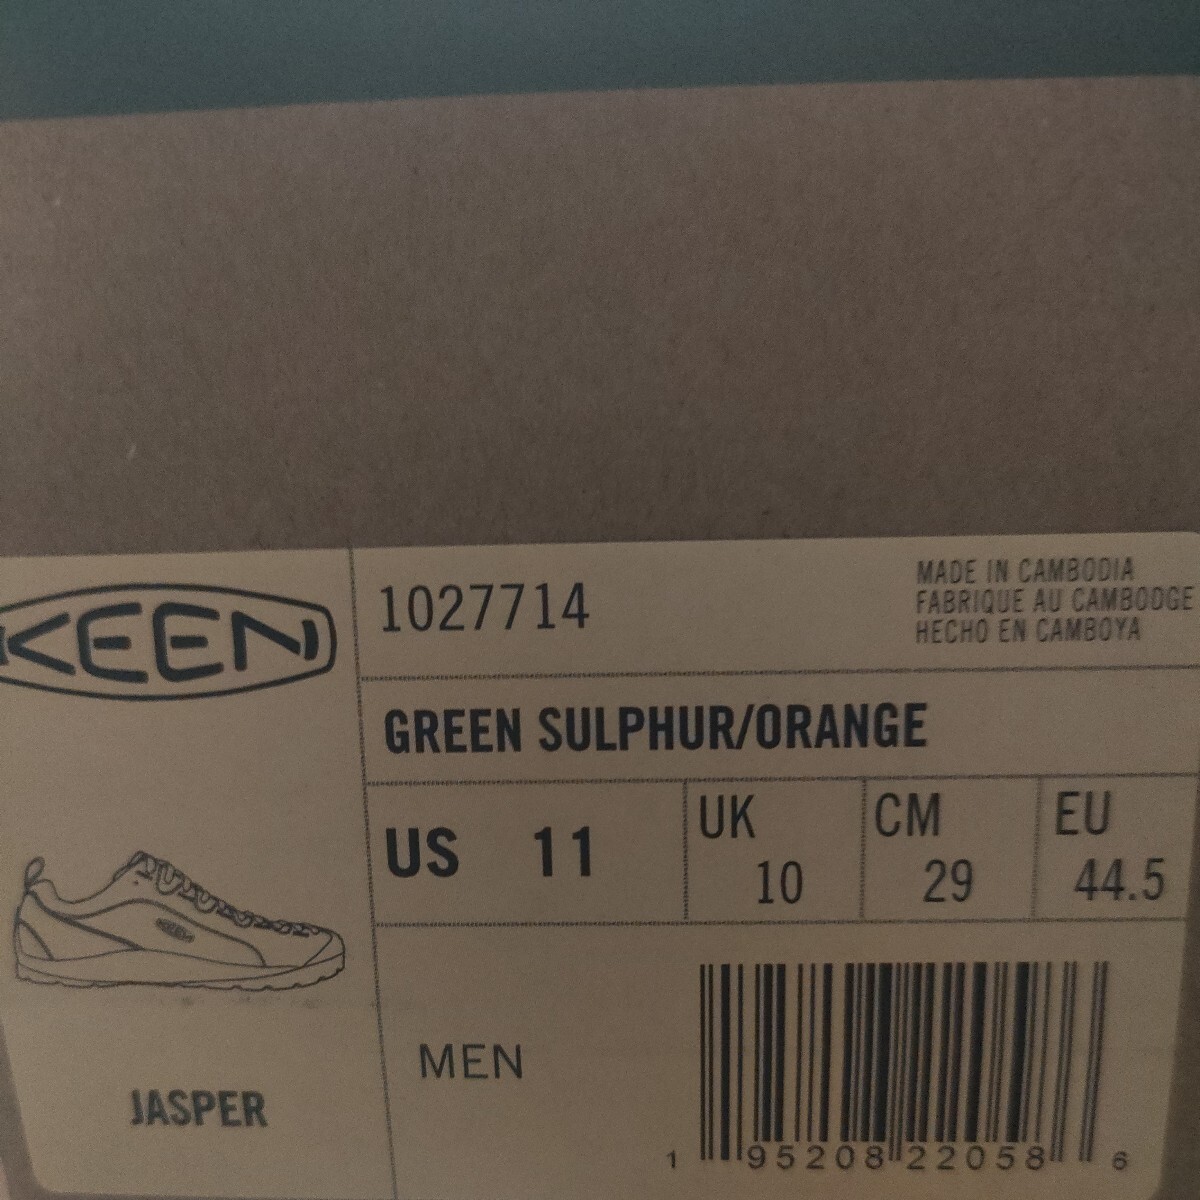  new goods regular price 15180 KEEN JASPER jasper 29cm US11 key n sneakers men's yellow orange regular goods outdoor 